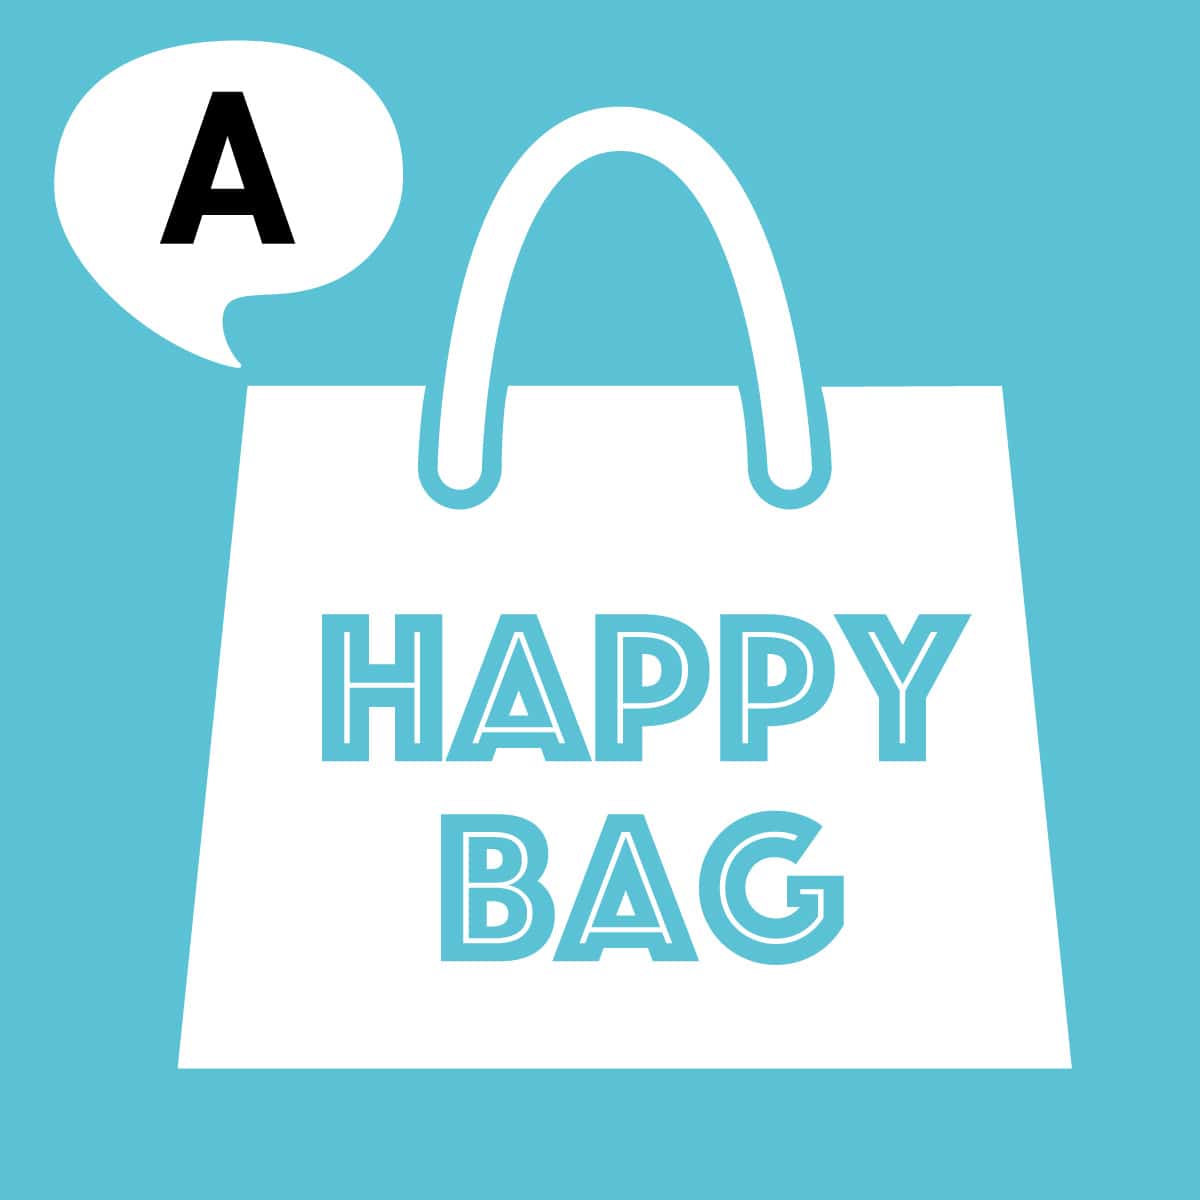 【HappyBag】タイツ・ストッキング福袋